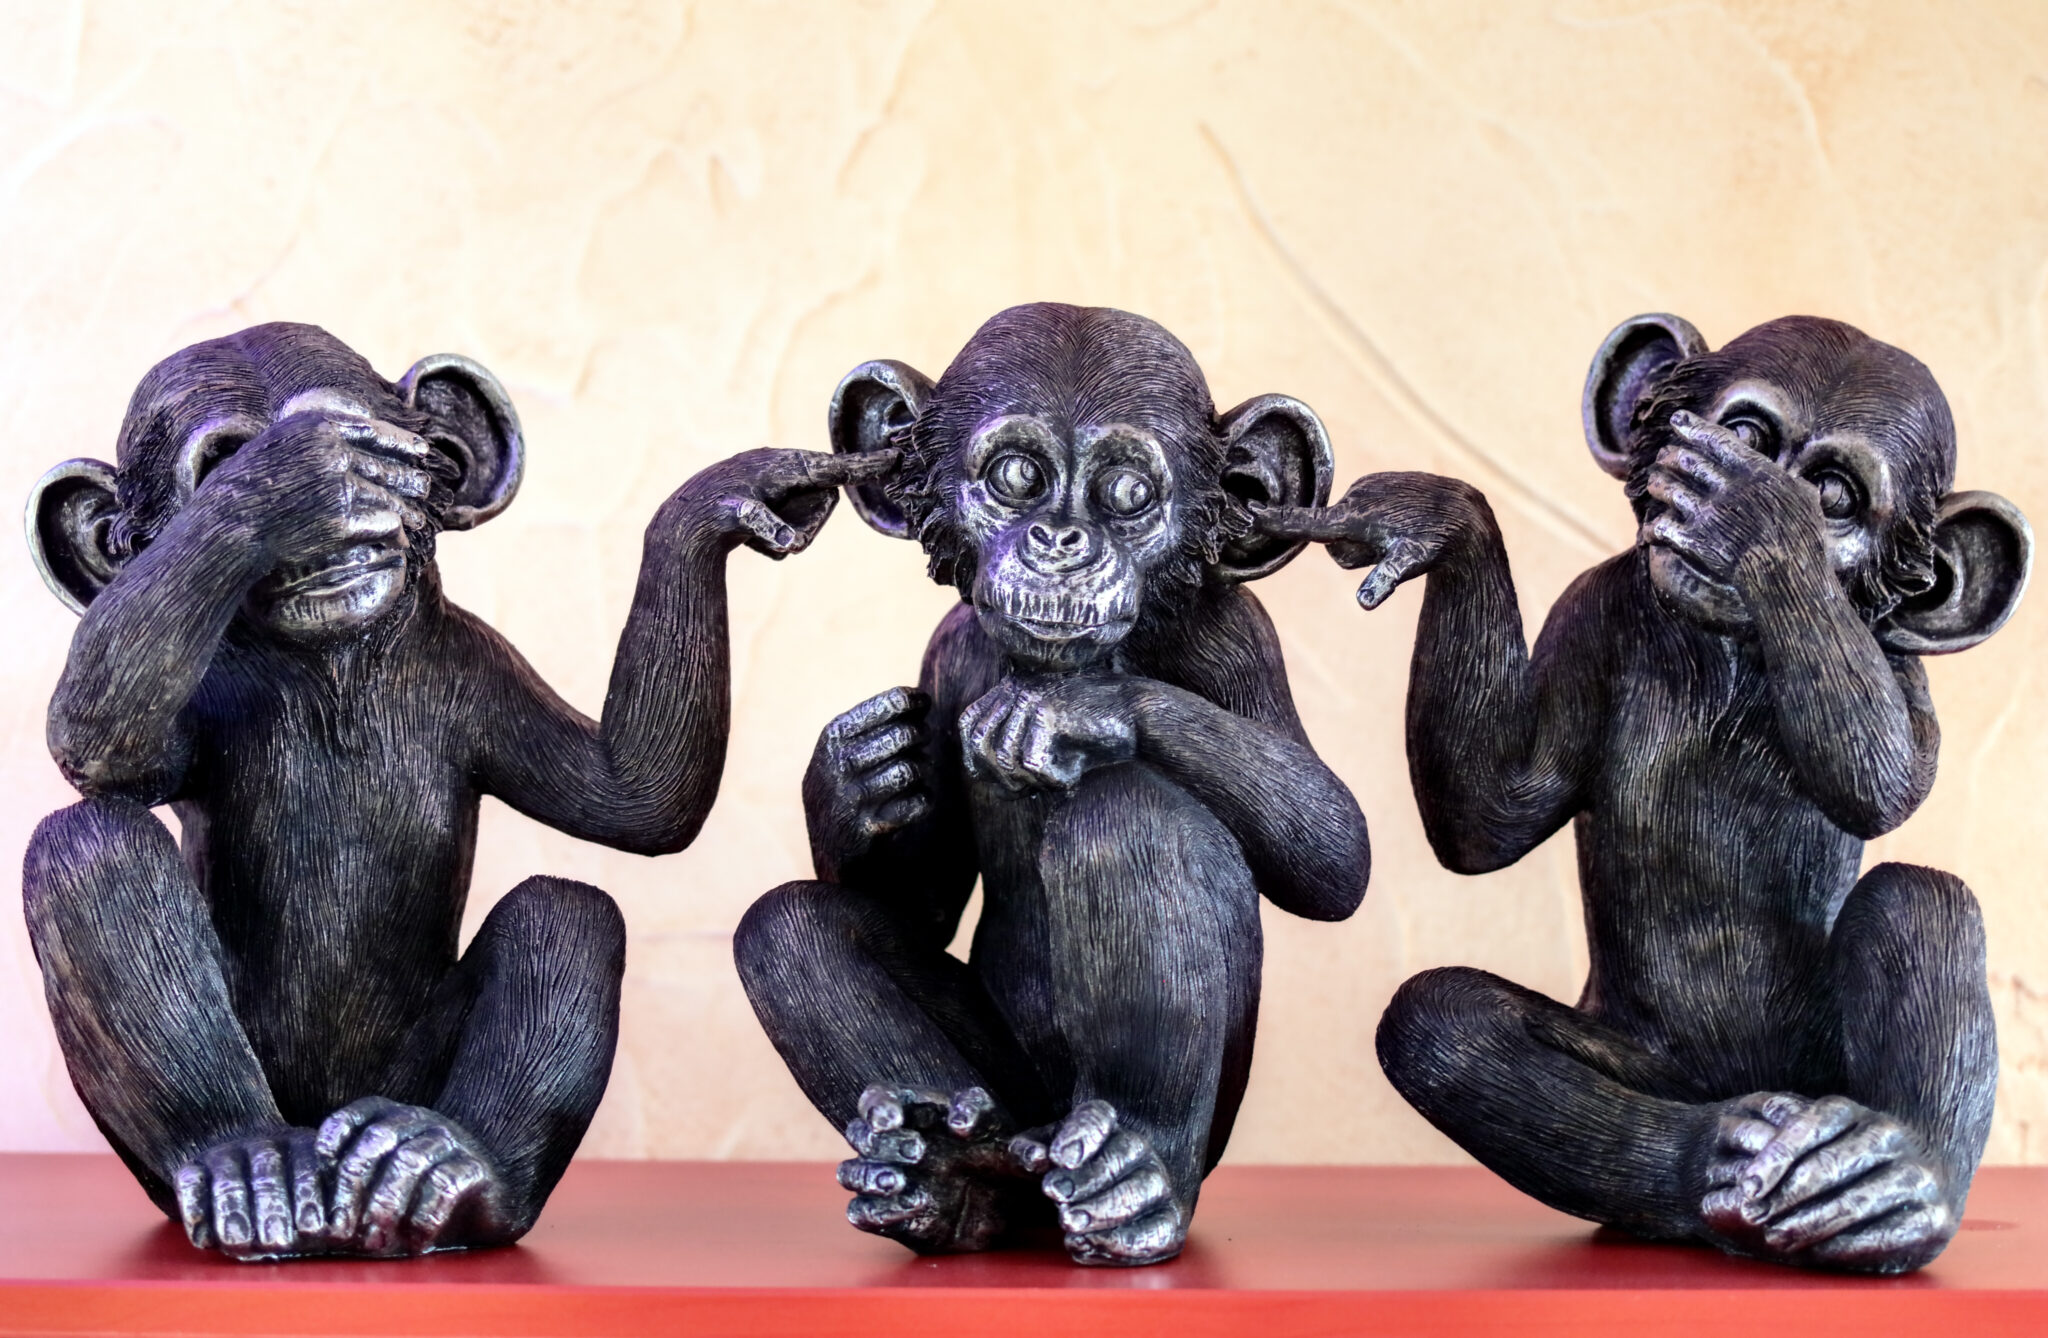 Les trois singes dicton asiatique, ne pas voir le mal, ne pas entendre le mal, ne pas dire le mal